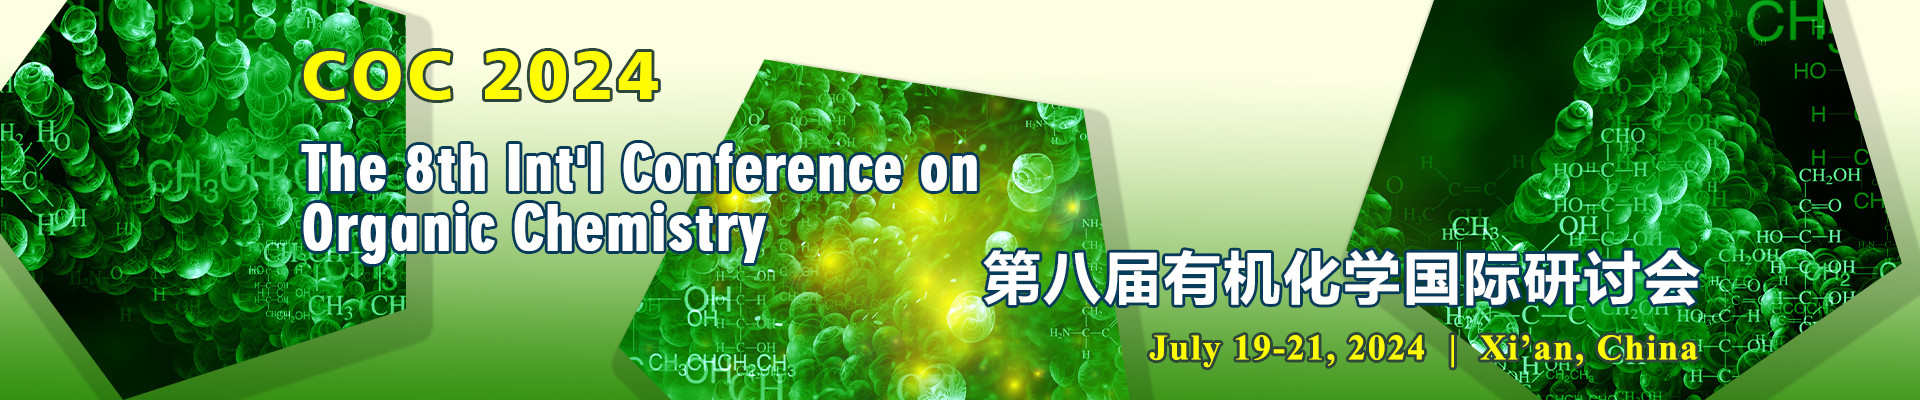 第八届有机化学国际研讨会 (COC 2024) 